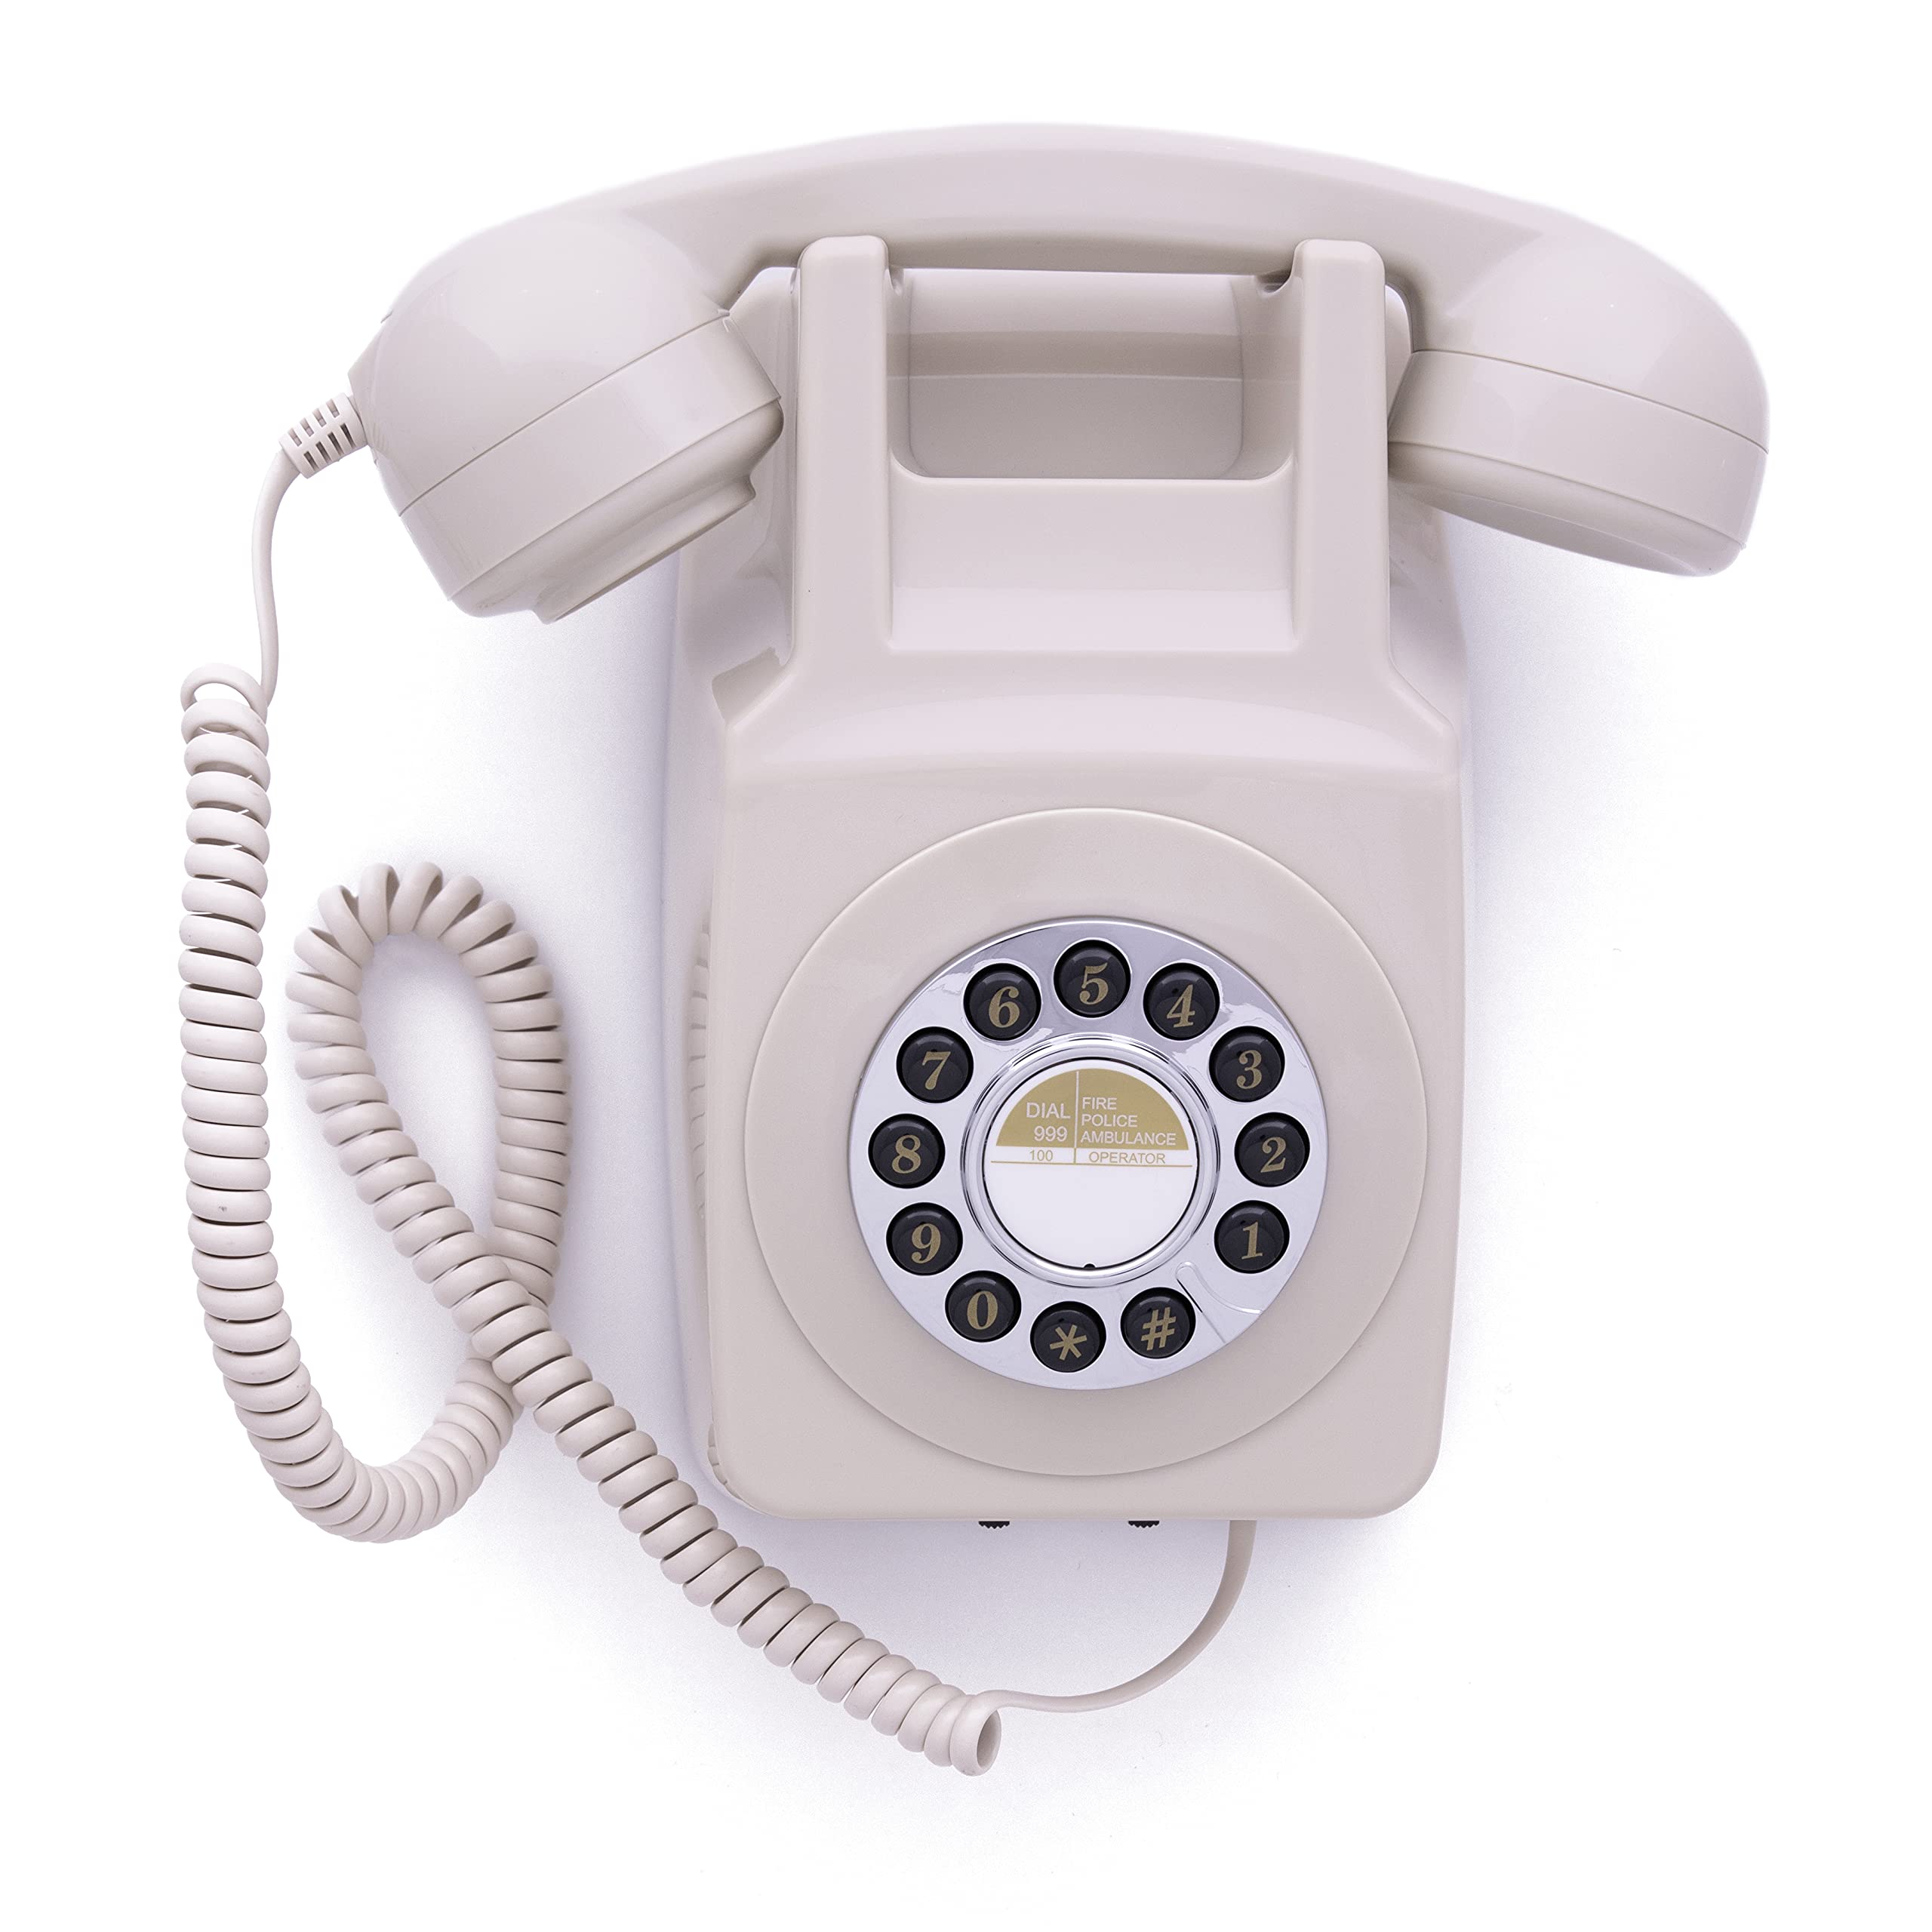 GPO 746WALL Retro Festznetztelefon mit Drucktasten zur Wandmontage mit authentischer Klingelton, Creme